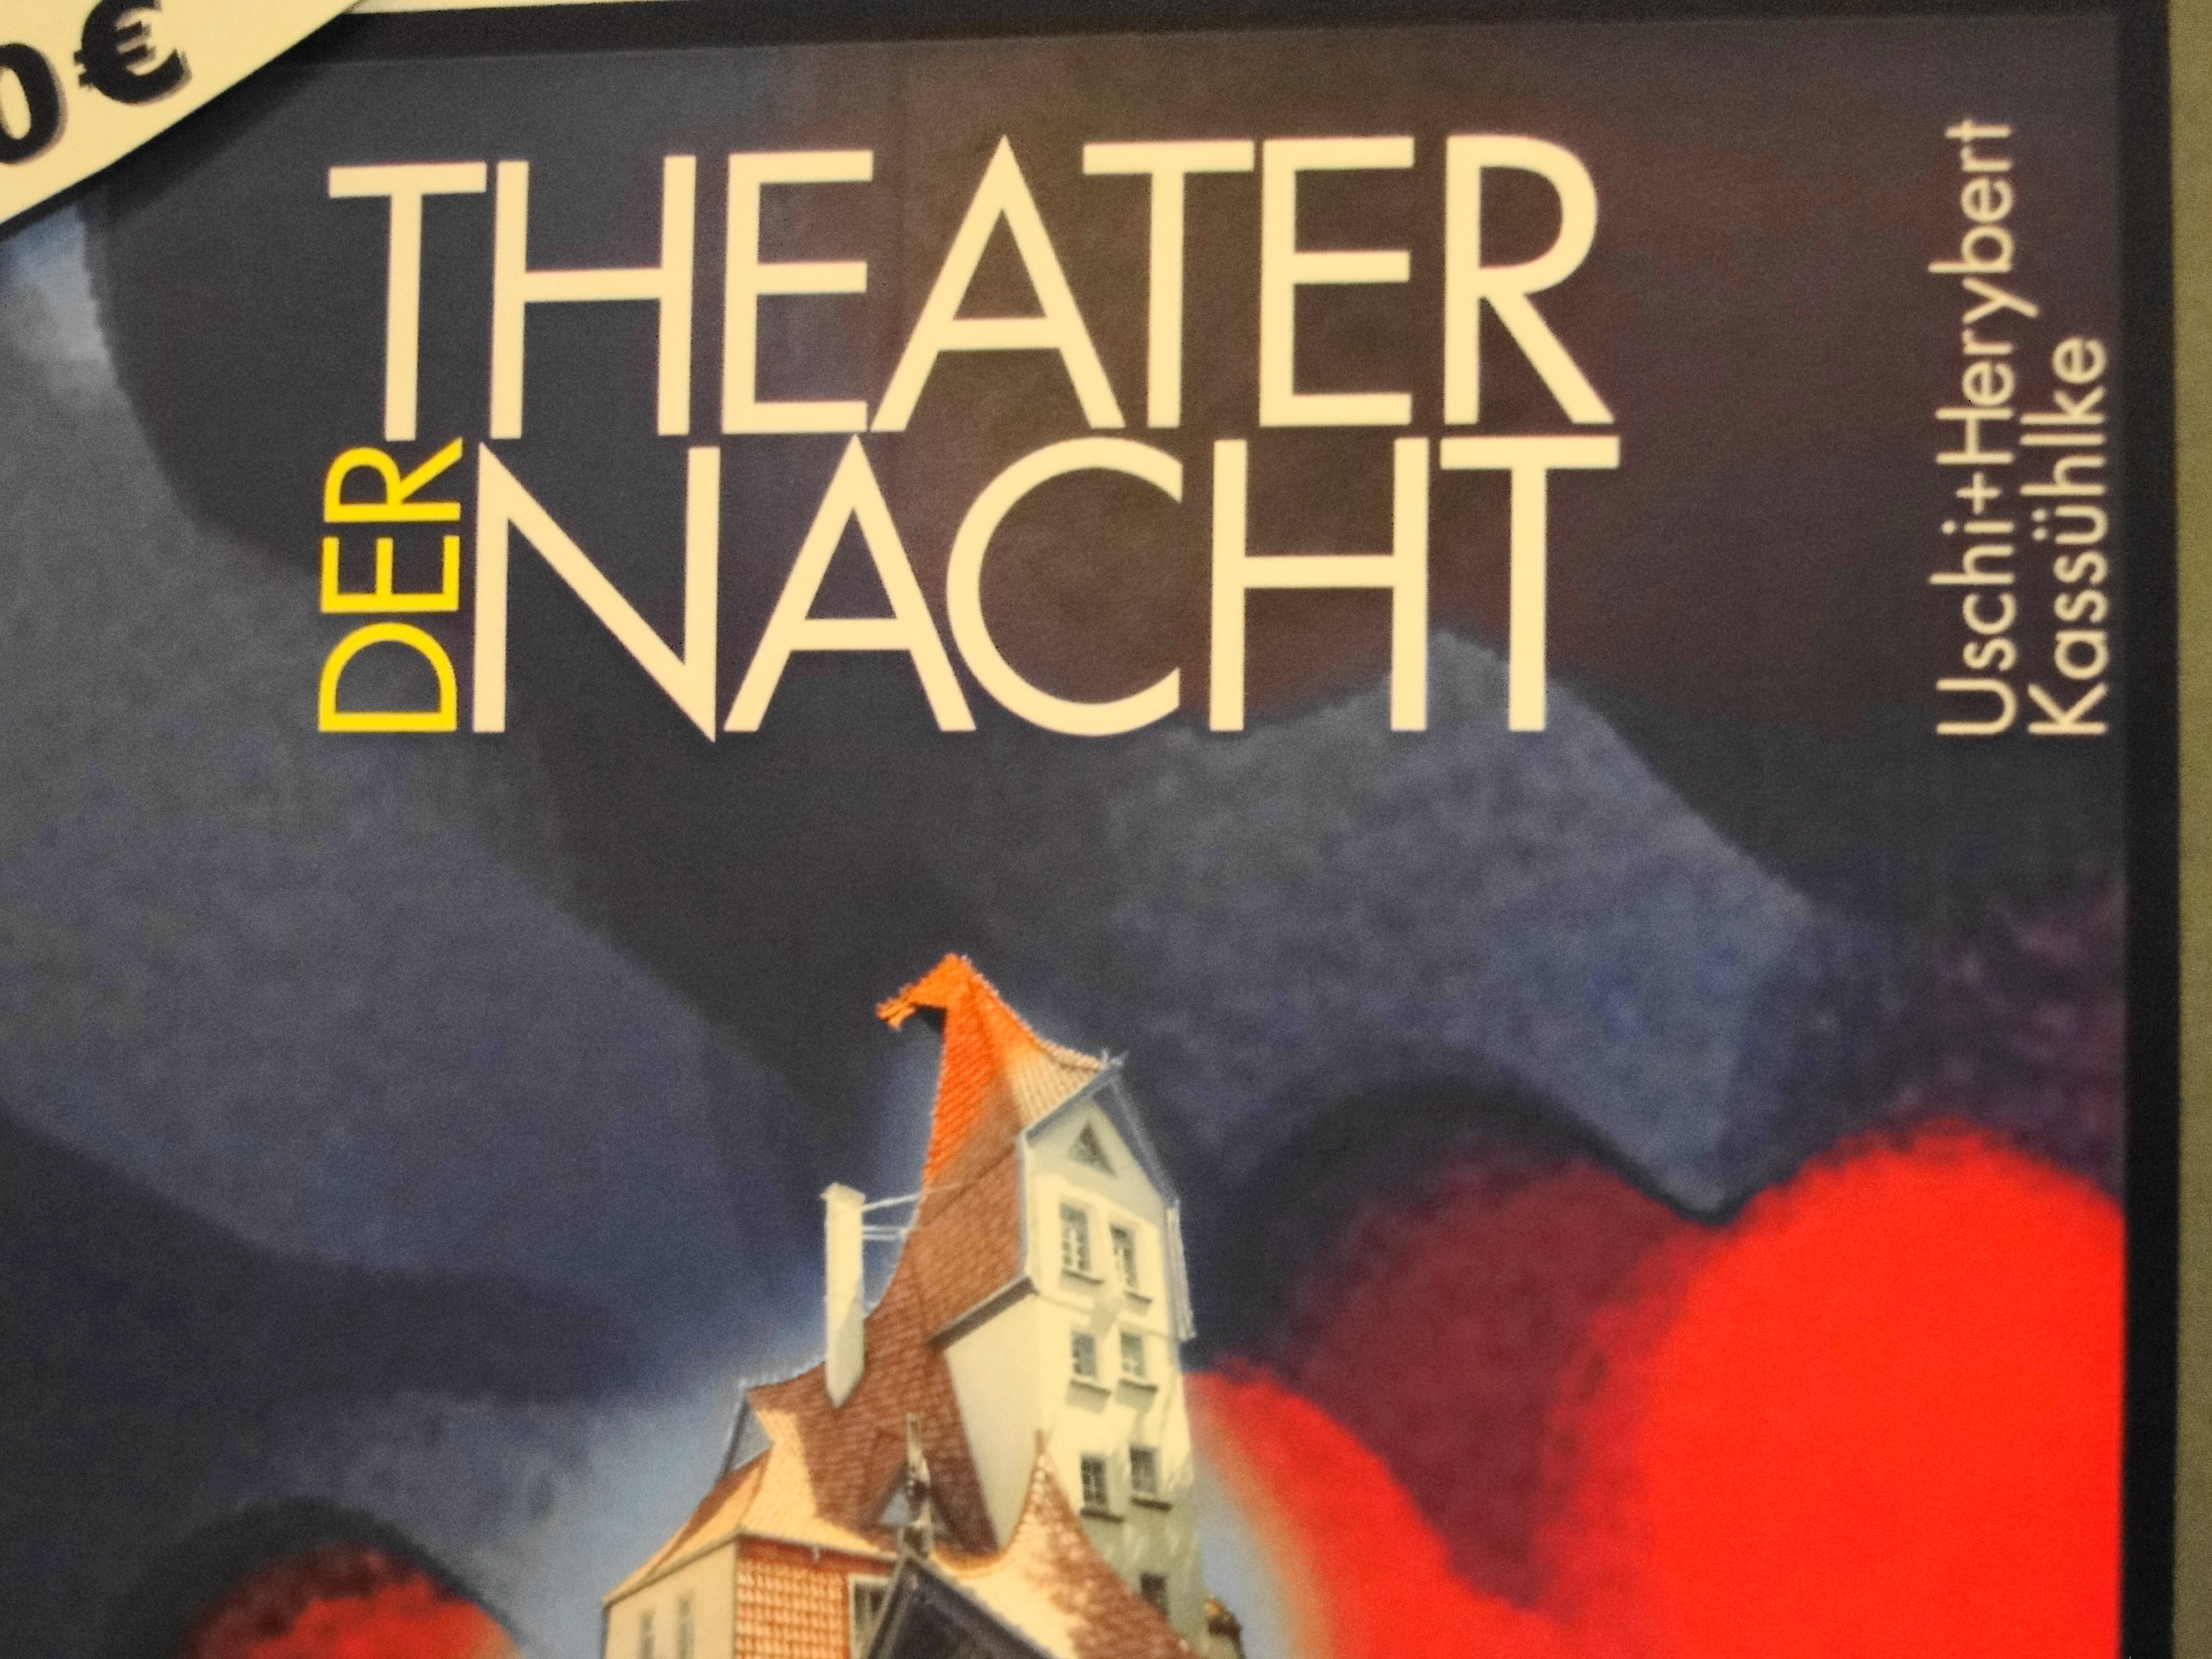 Plakat Theater der Nacht in Northeim